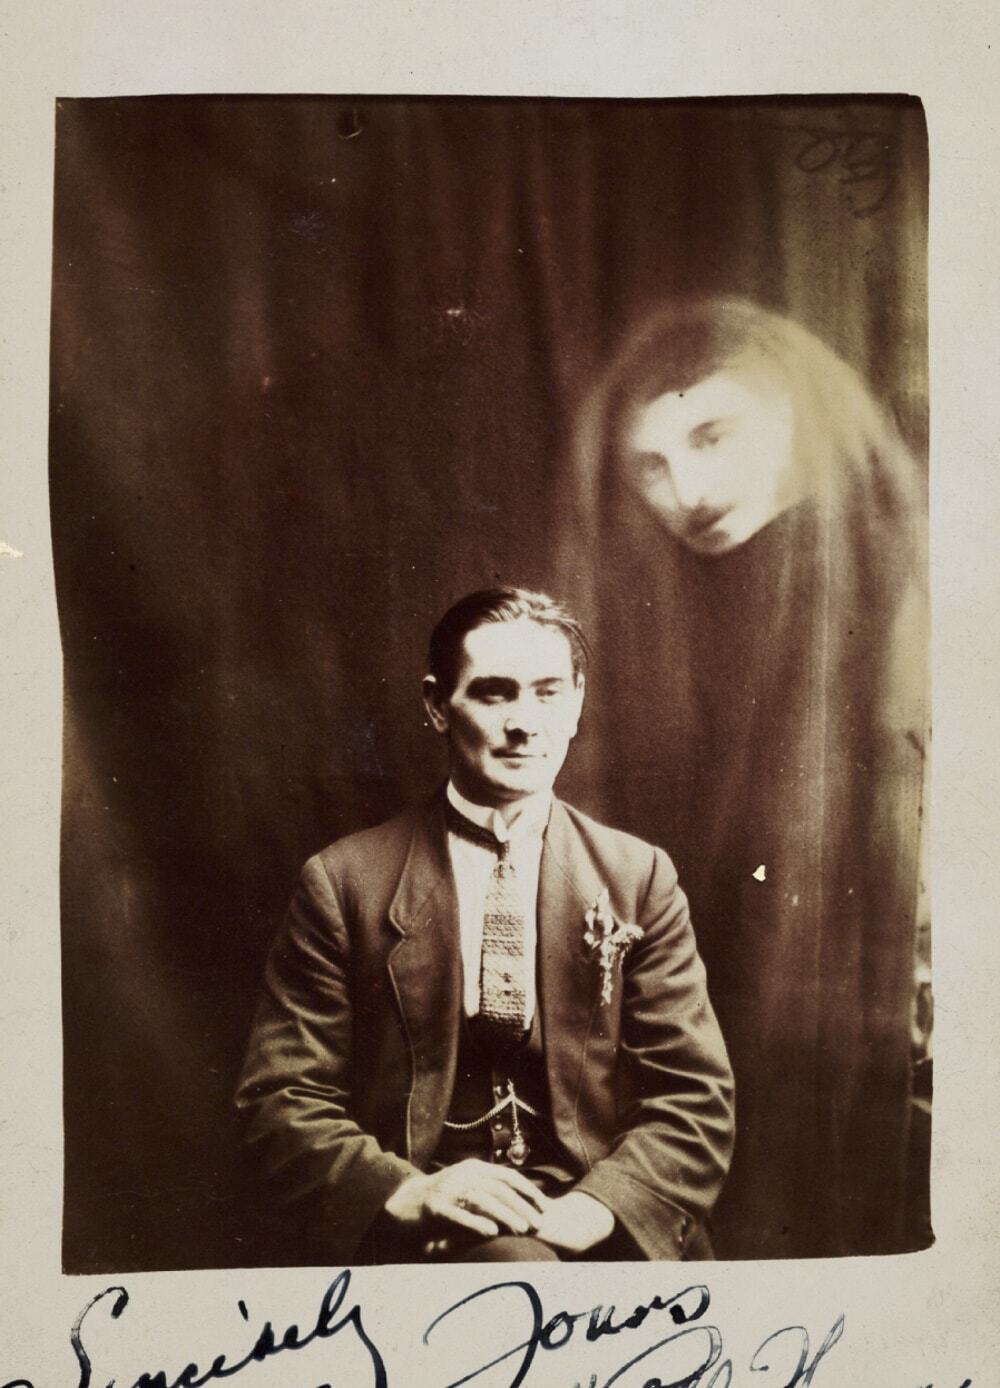 Мужское лицо над валлийским медиумом Уиллом Томасом, 1920 год